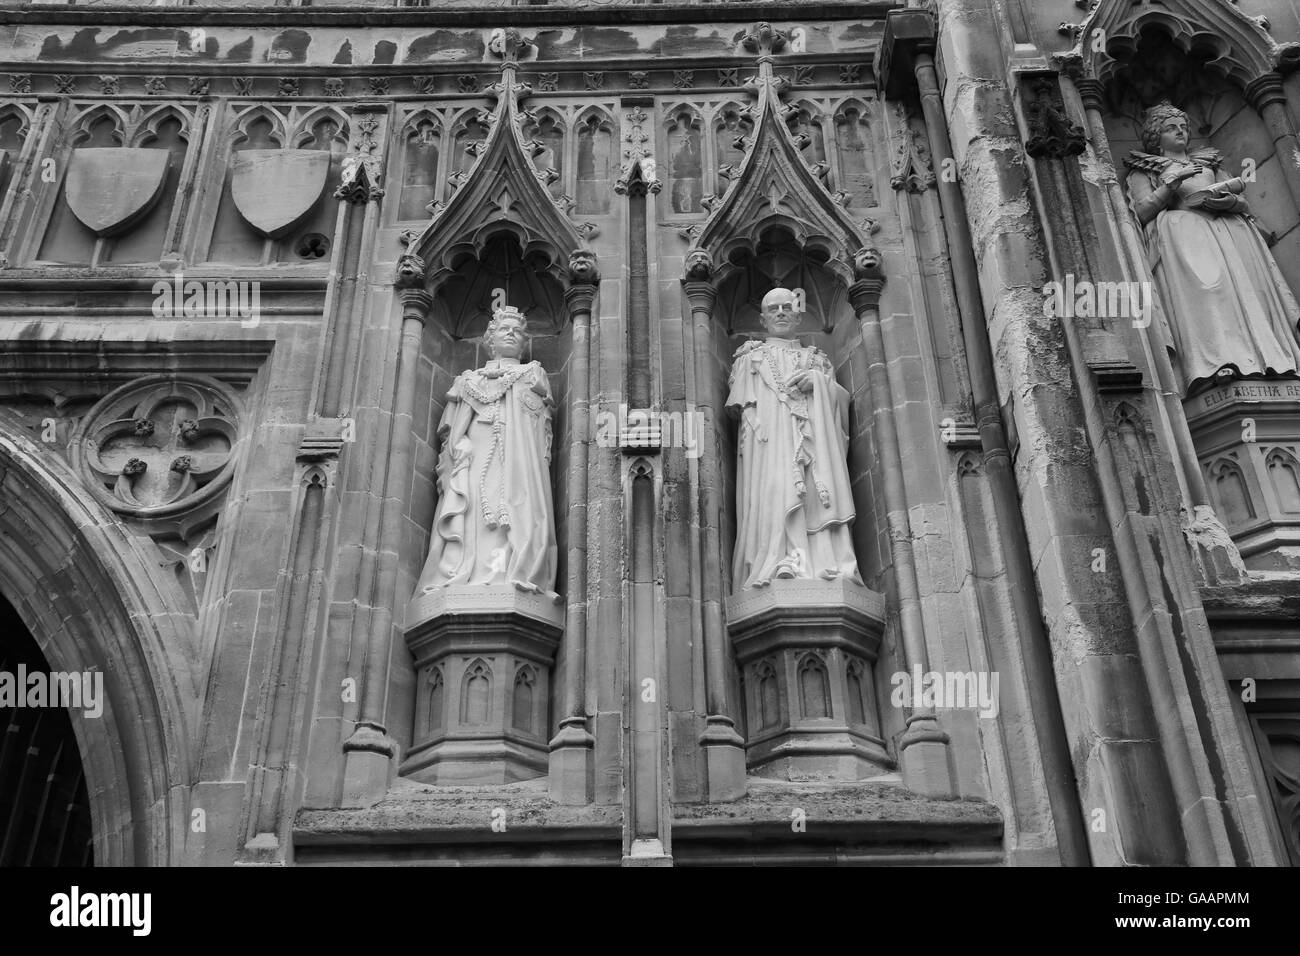 Les Statues de la reine Elizabeth II et le Prince Philip se tenir dans la façade de la Cathédrale de Canterbury. Canterbury, Angleterre. Banque D'Images